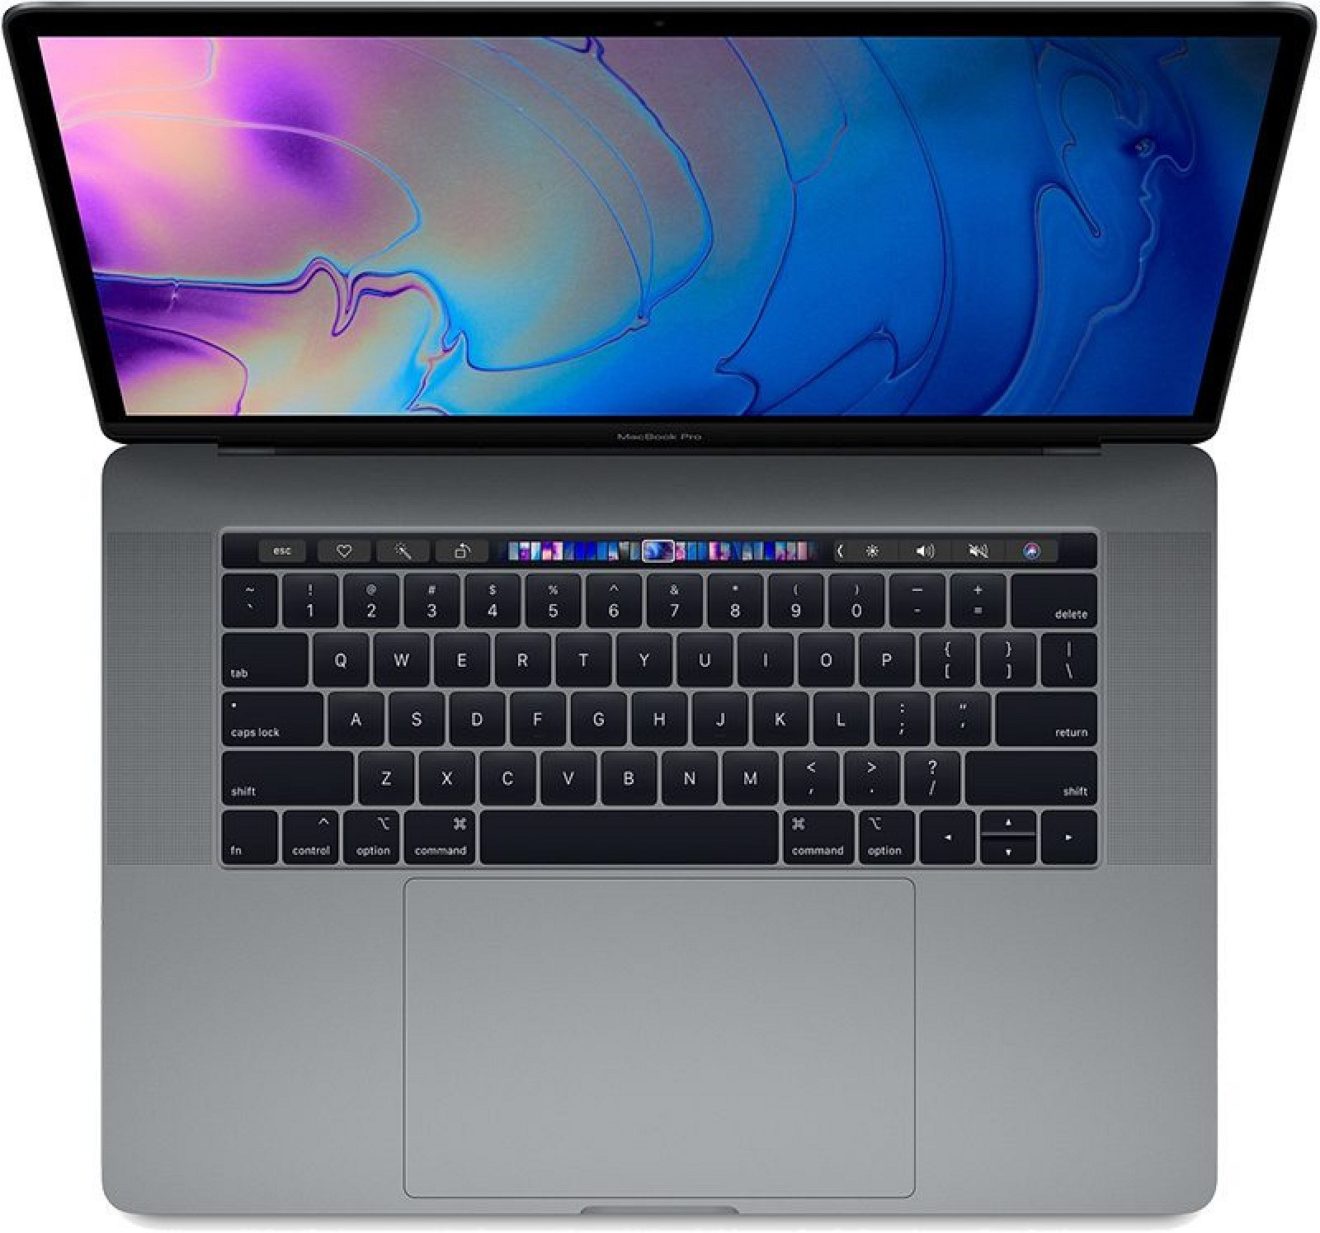 Image 1 : En 2019, Apple devrait innover et proposer un MacBook Pro de 16 pouces